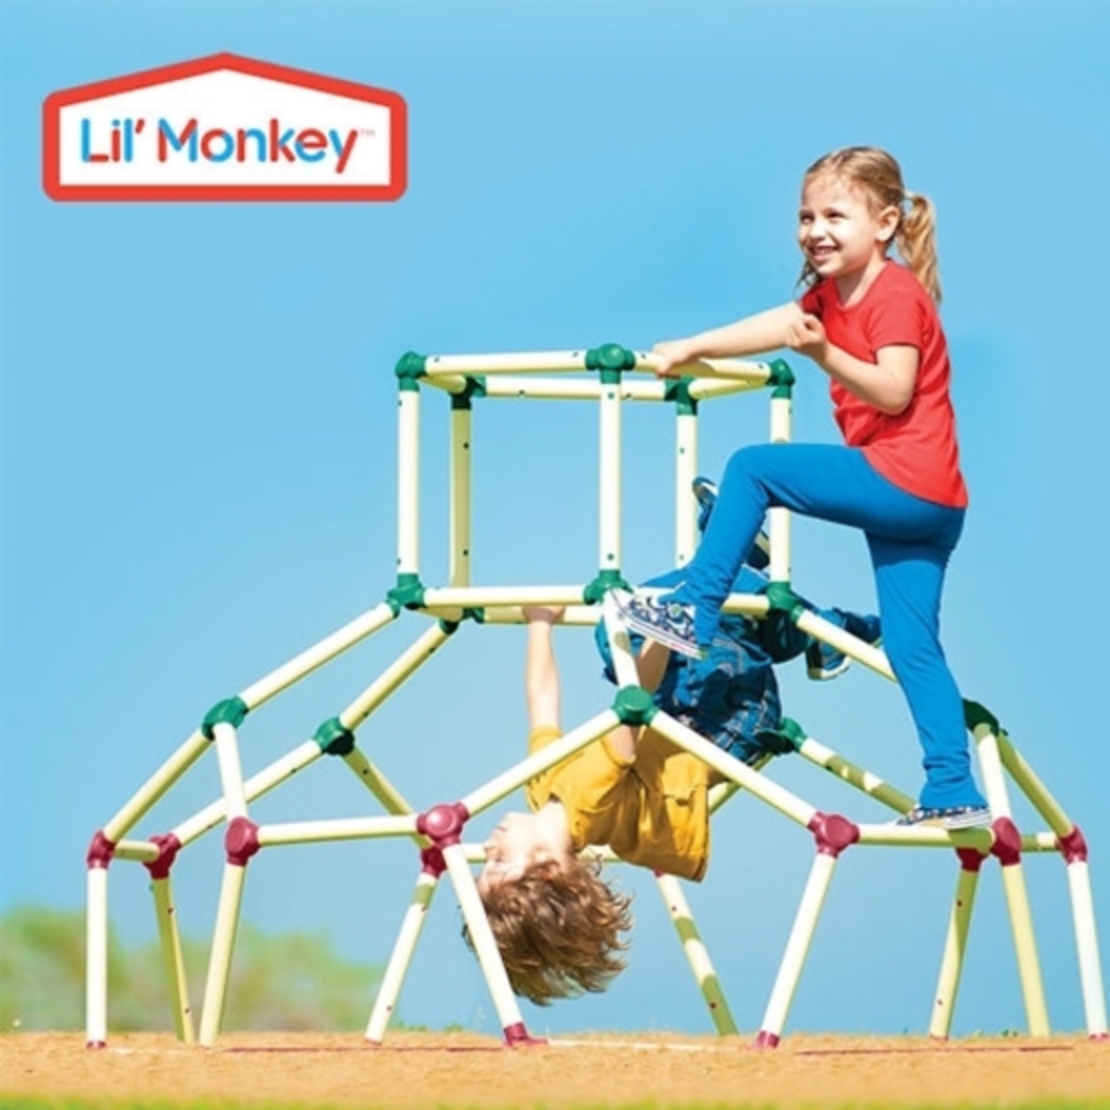 מתקן טיפוס ליל מונקי Lil Monkey